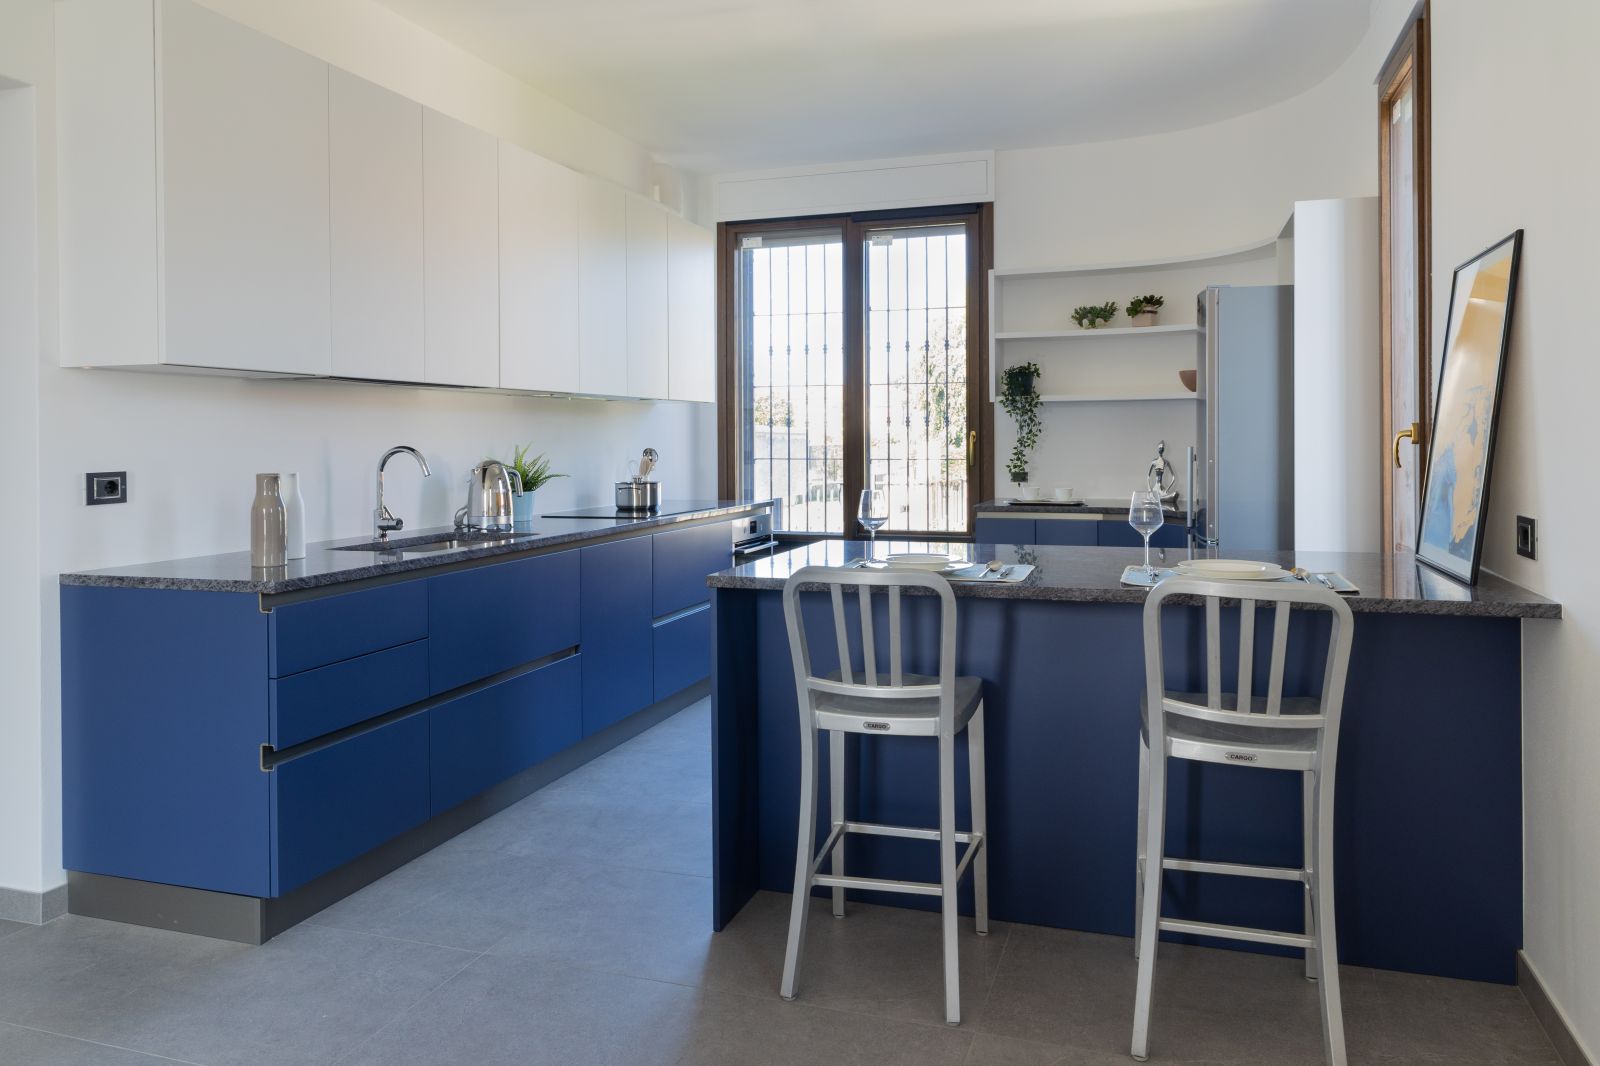 Cucina laccata bianco e blu cobalto